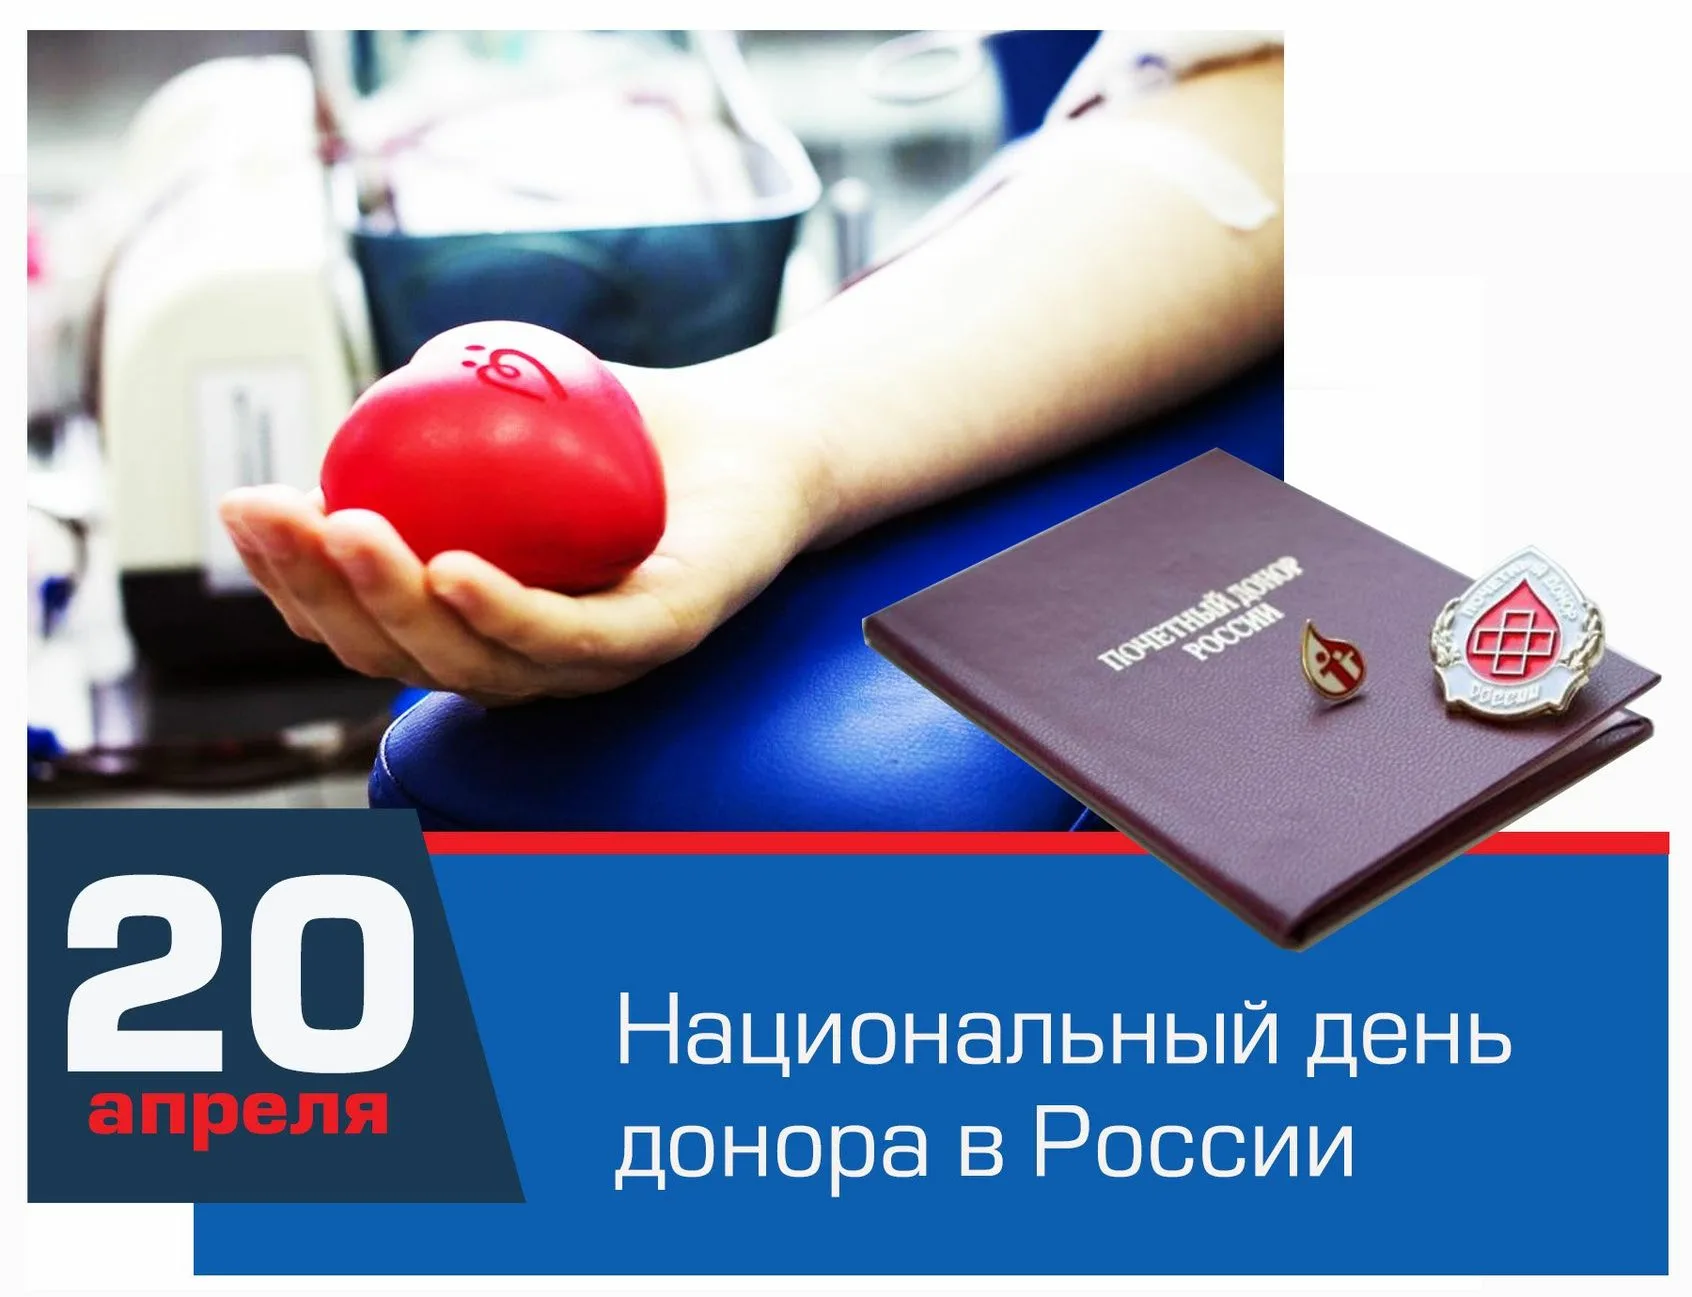 Донорство сегодня. Национальный день донора. 20 Апреля день донора. Национальный день донора крови в России. День донора крови 20 апреля.